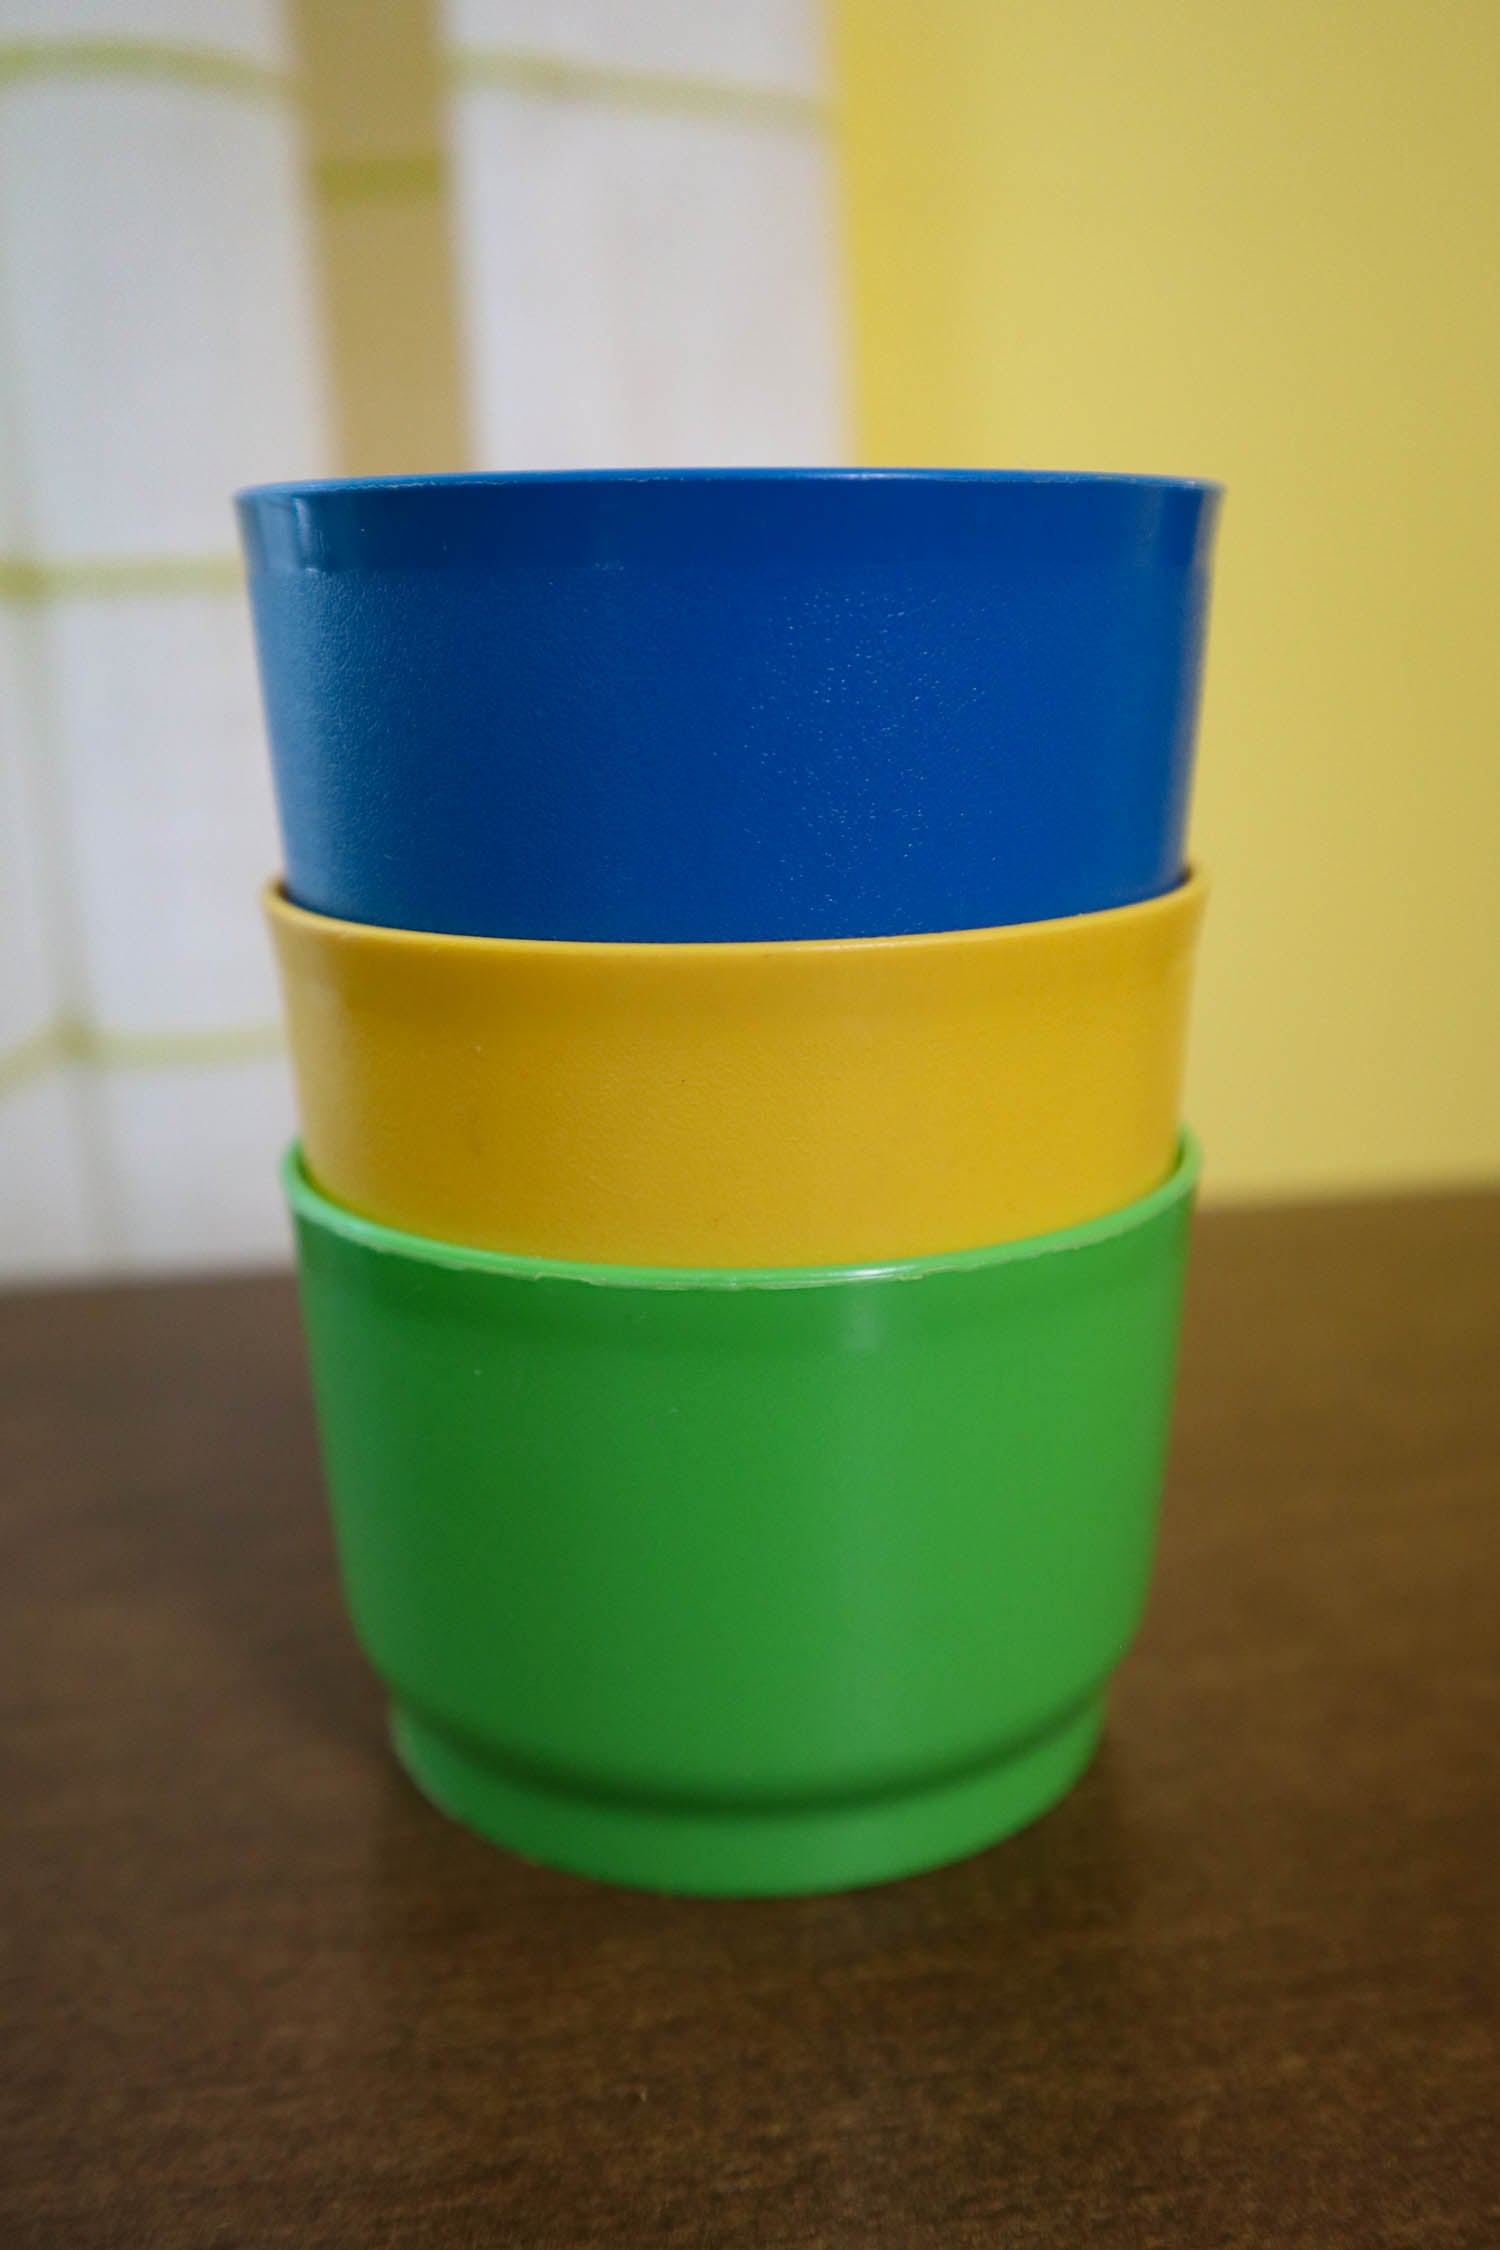 Vintage Tupperware Snack Cups 1229 